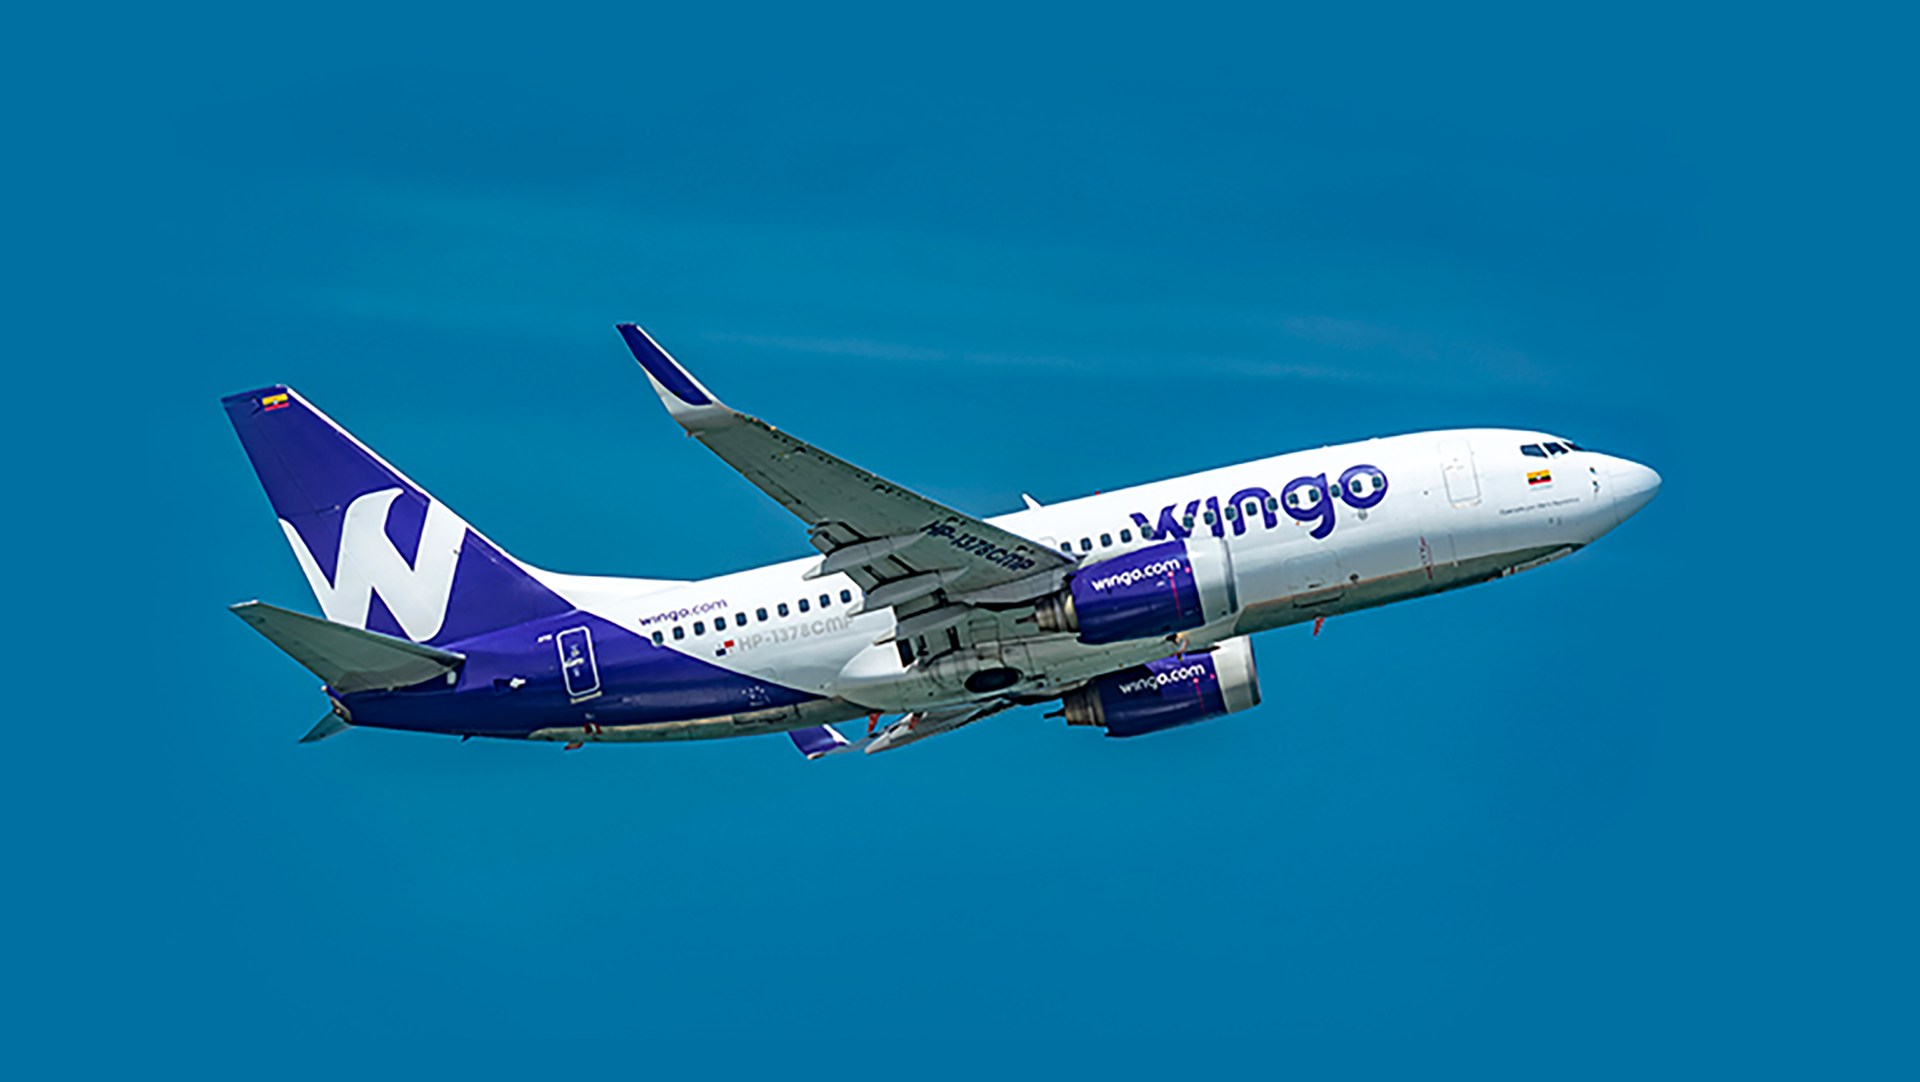 Wingo Air cuenta con una flota de aviones Boeing 737-800 Next Generation